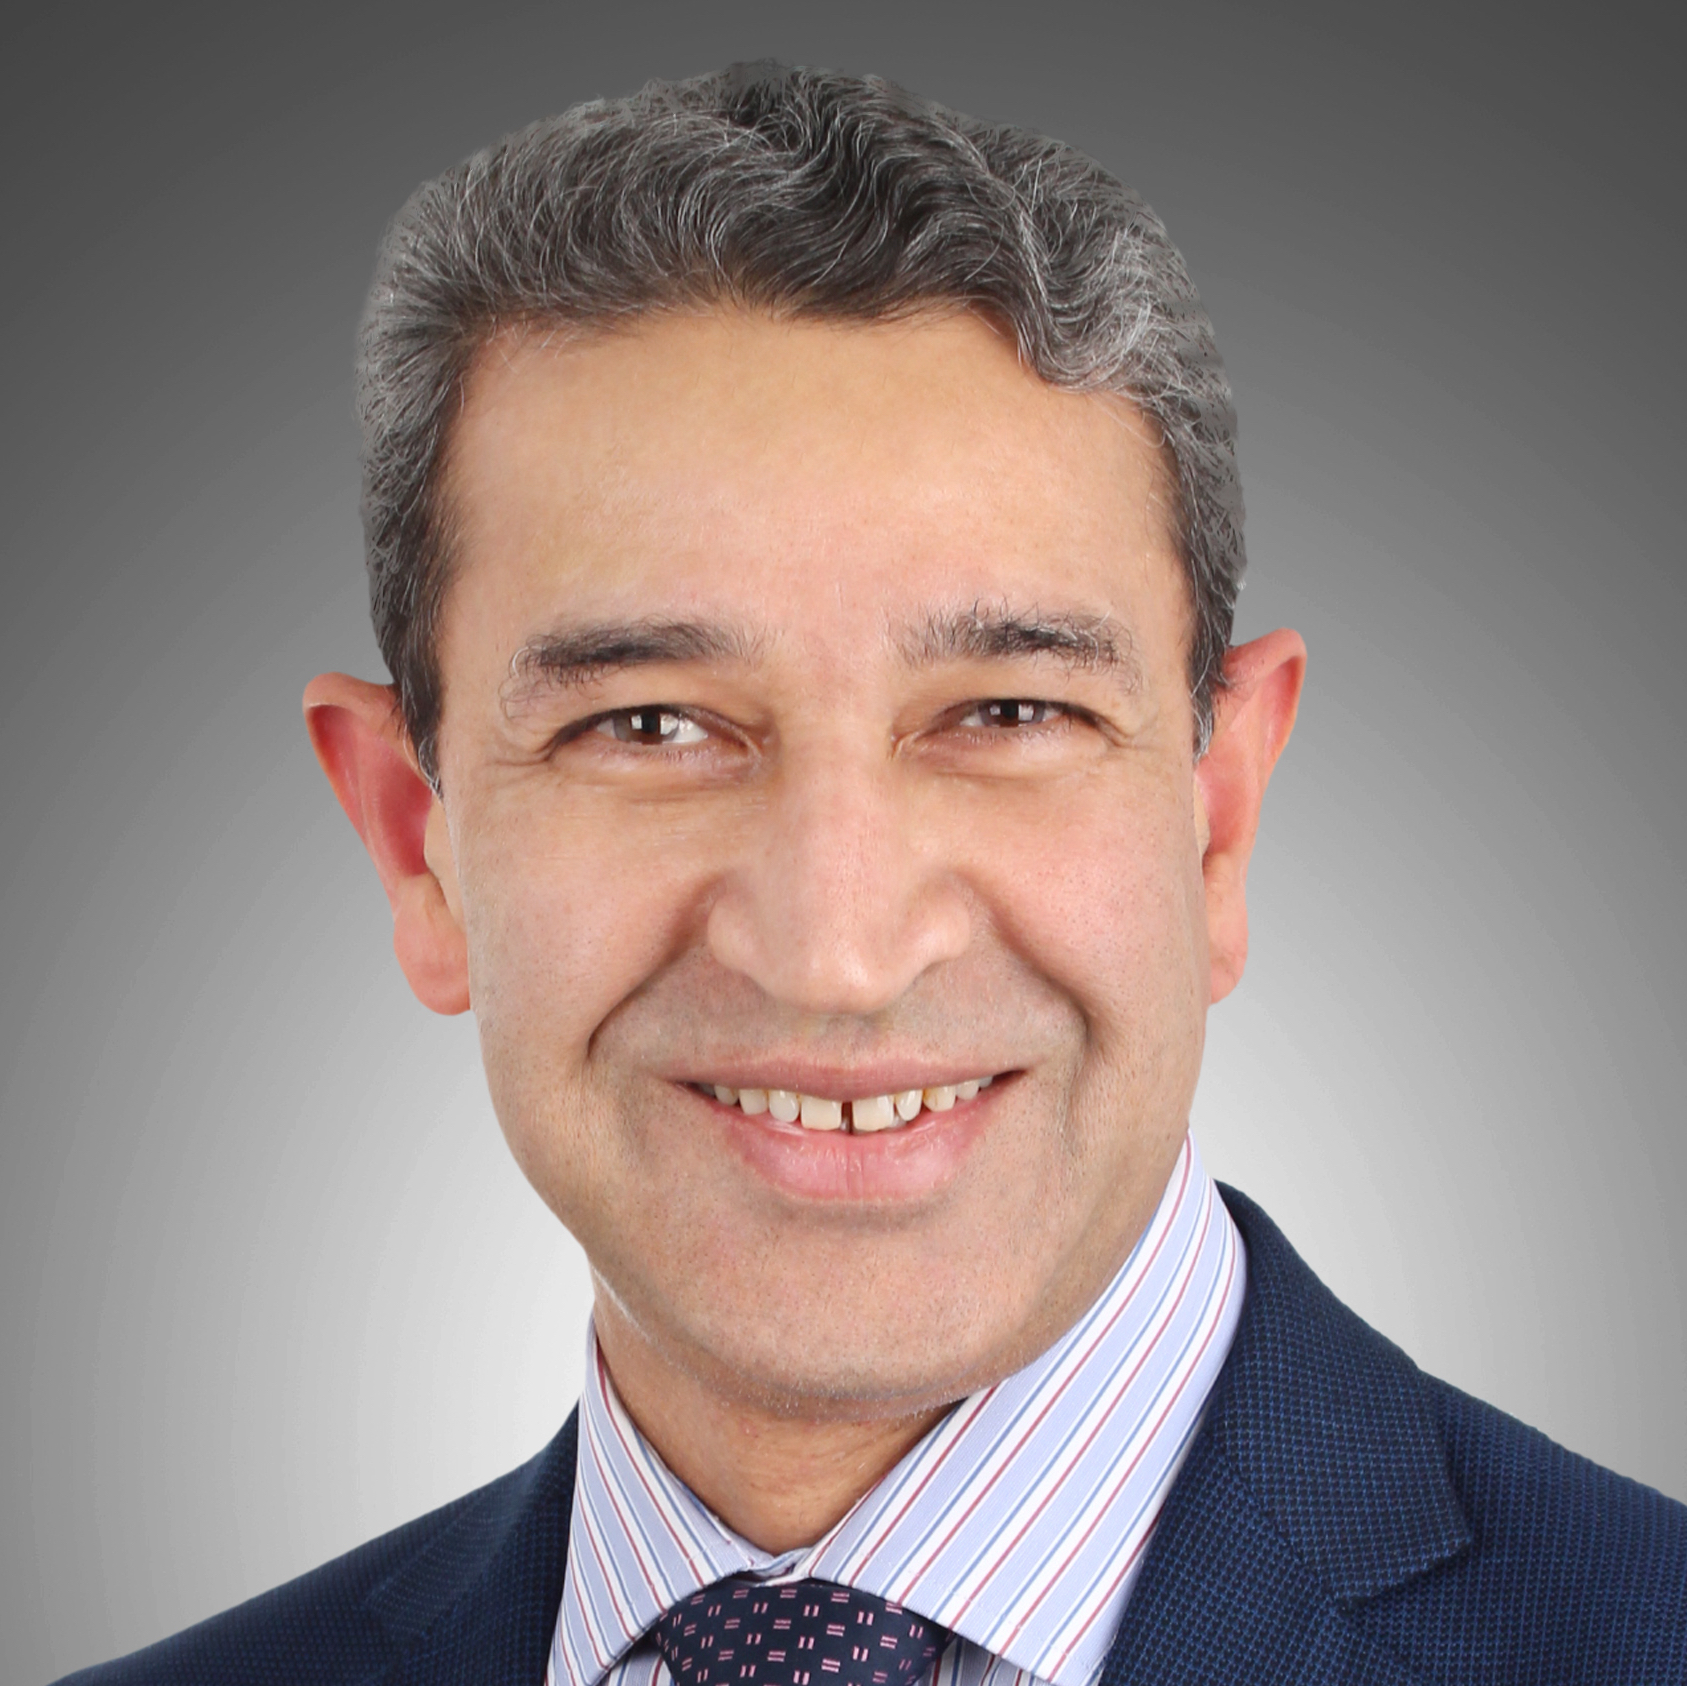 Dr Abid Qazi